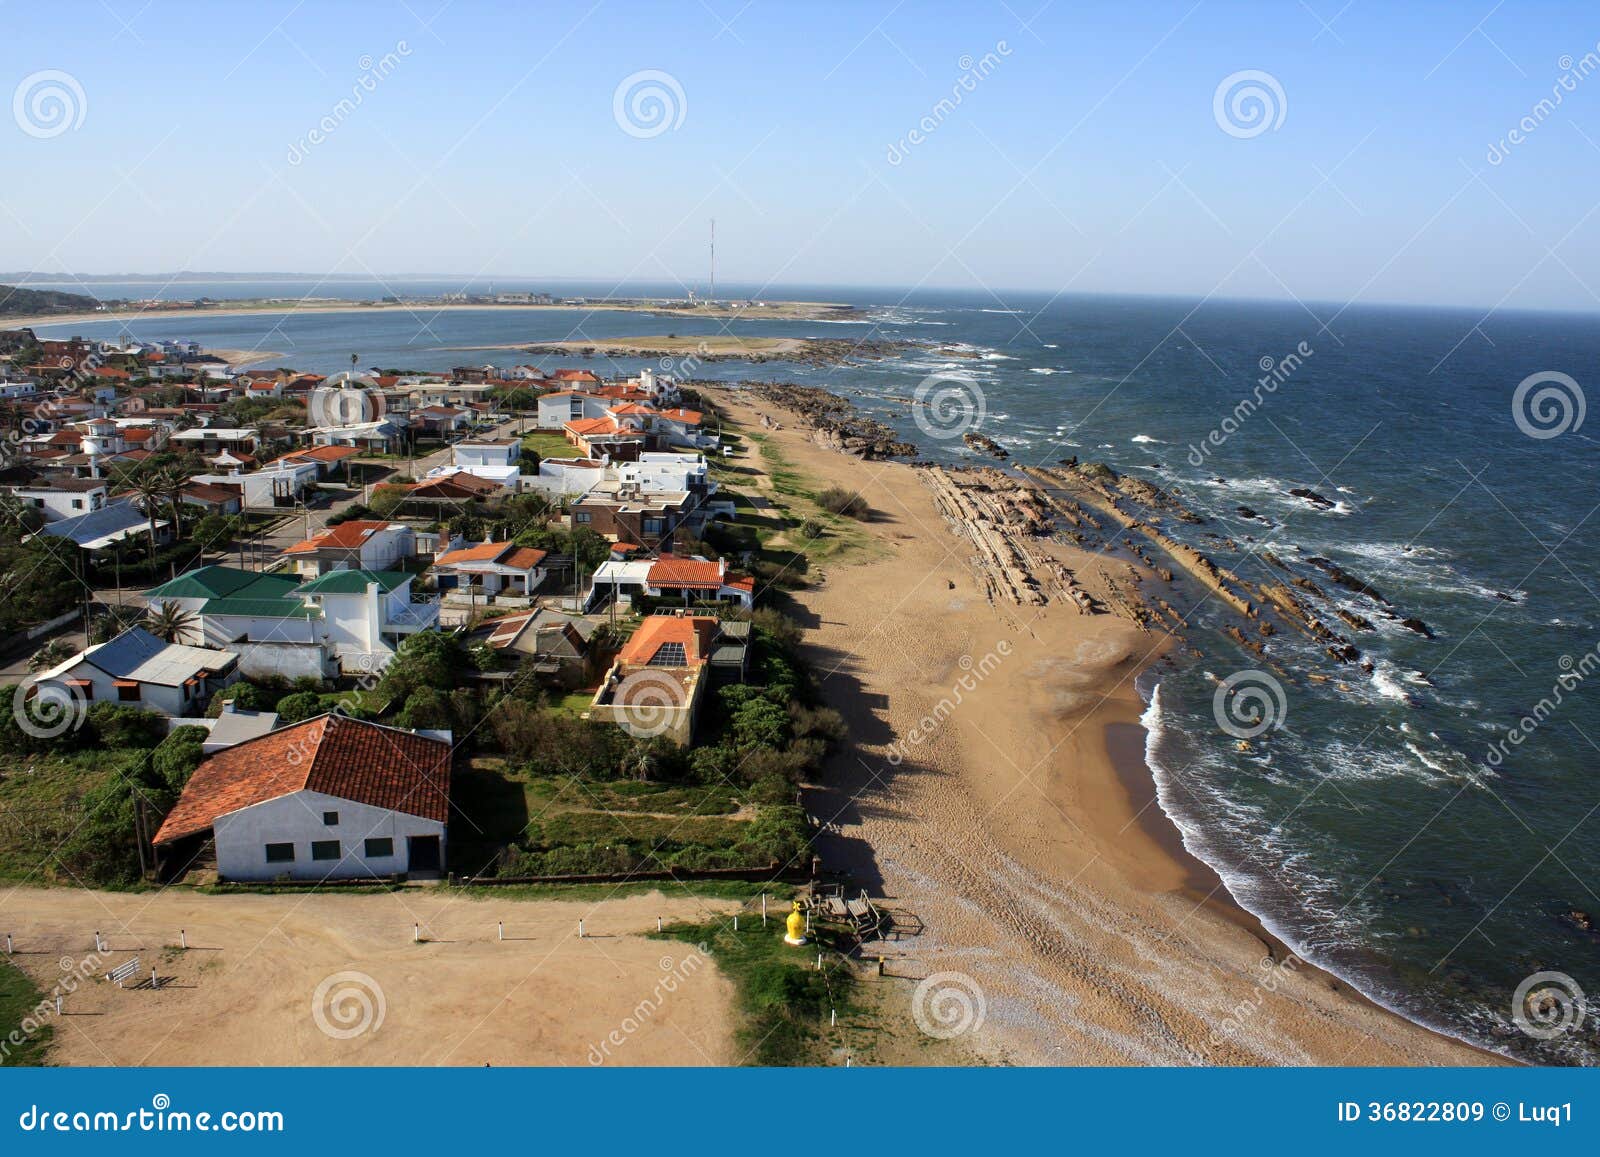 atlantic coastline, la paloma, uruguay